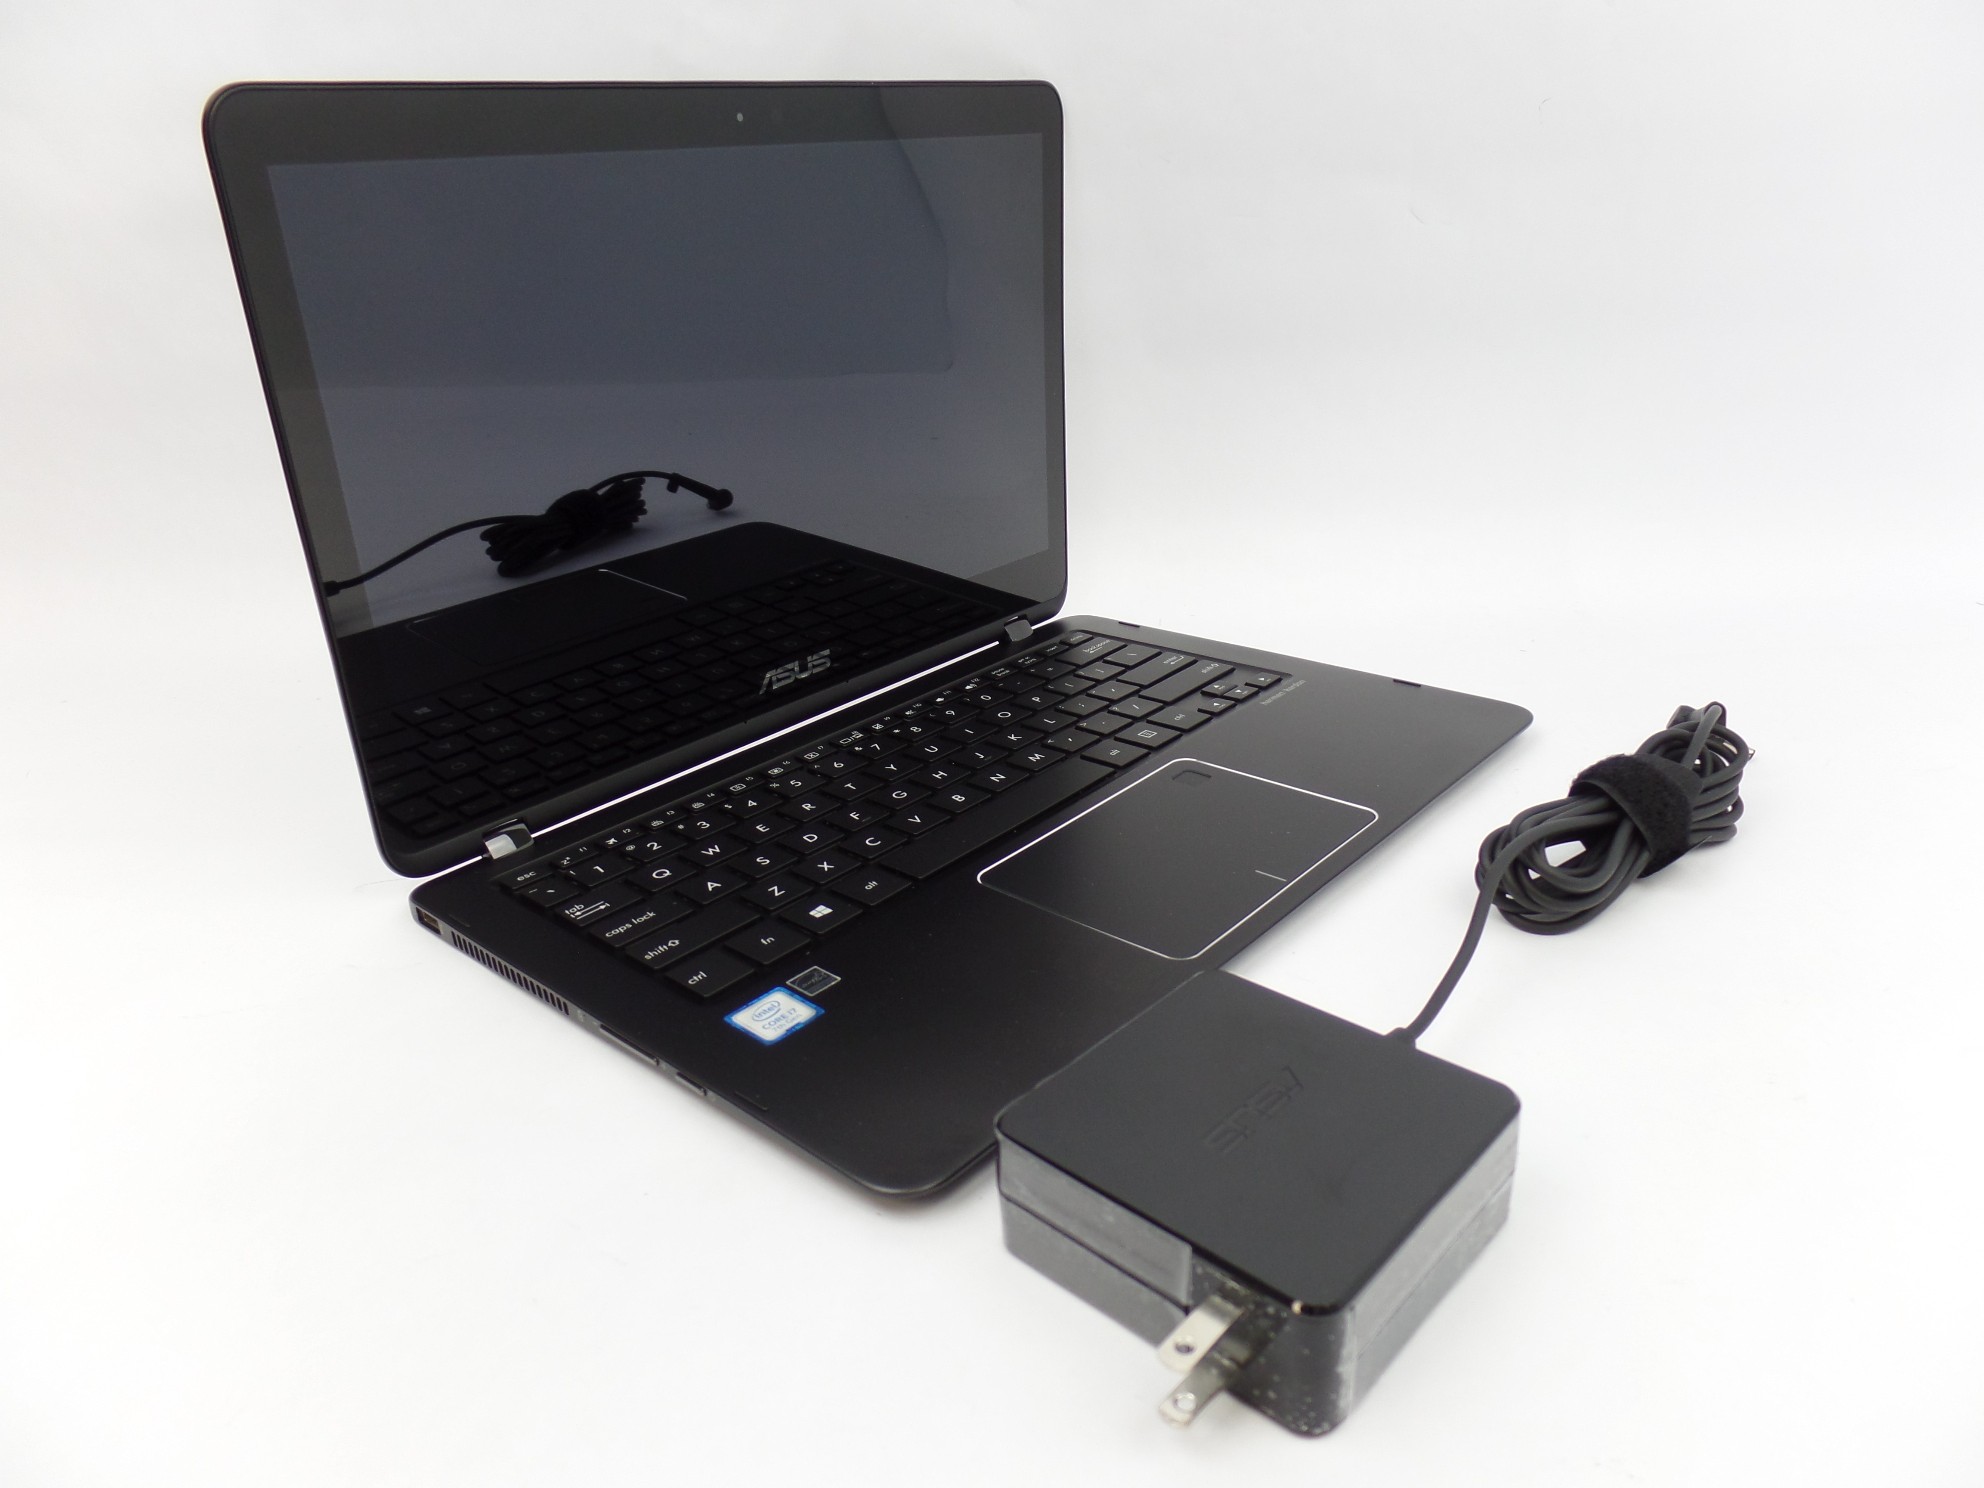 ASUS Q324UA-BHI7T17 13.3" FHD Touch i7-7500U 2.7GHz 16GB 512GB W10 2in1 Laptop U